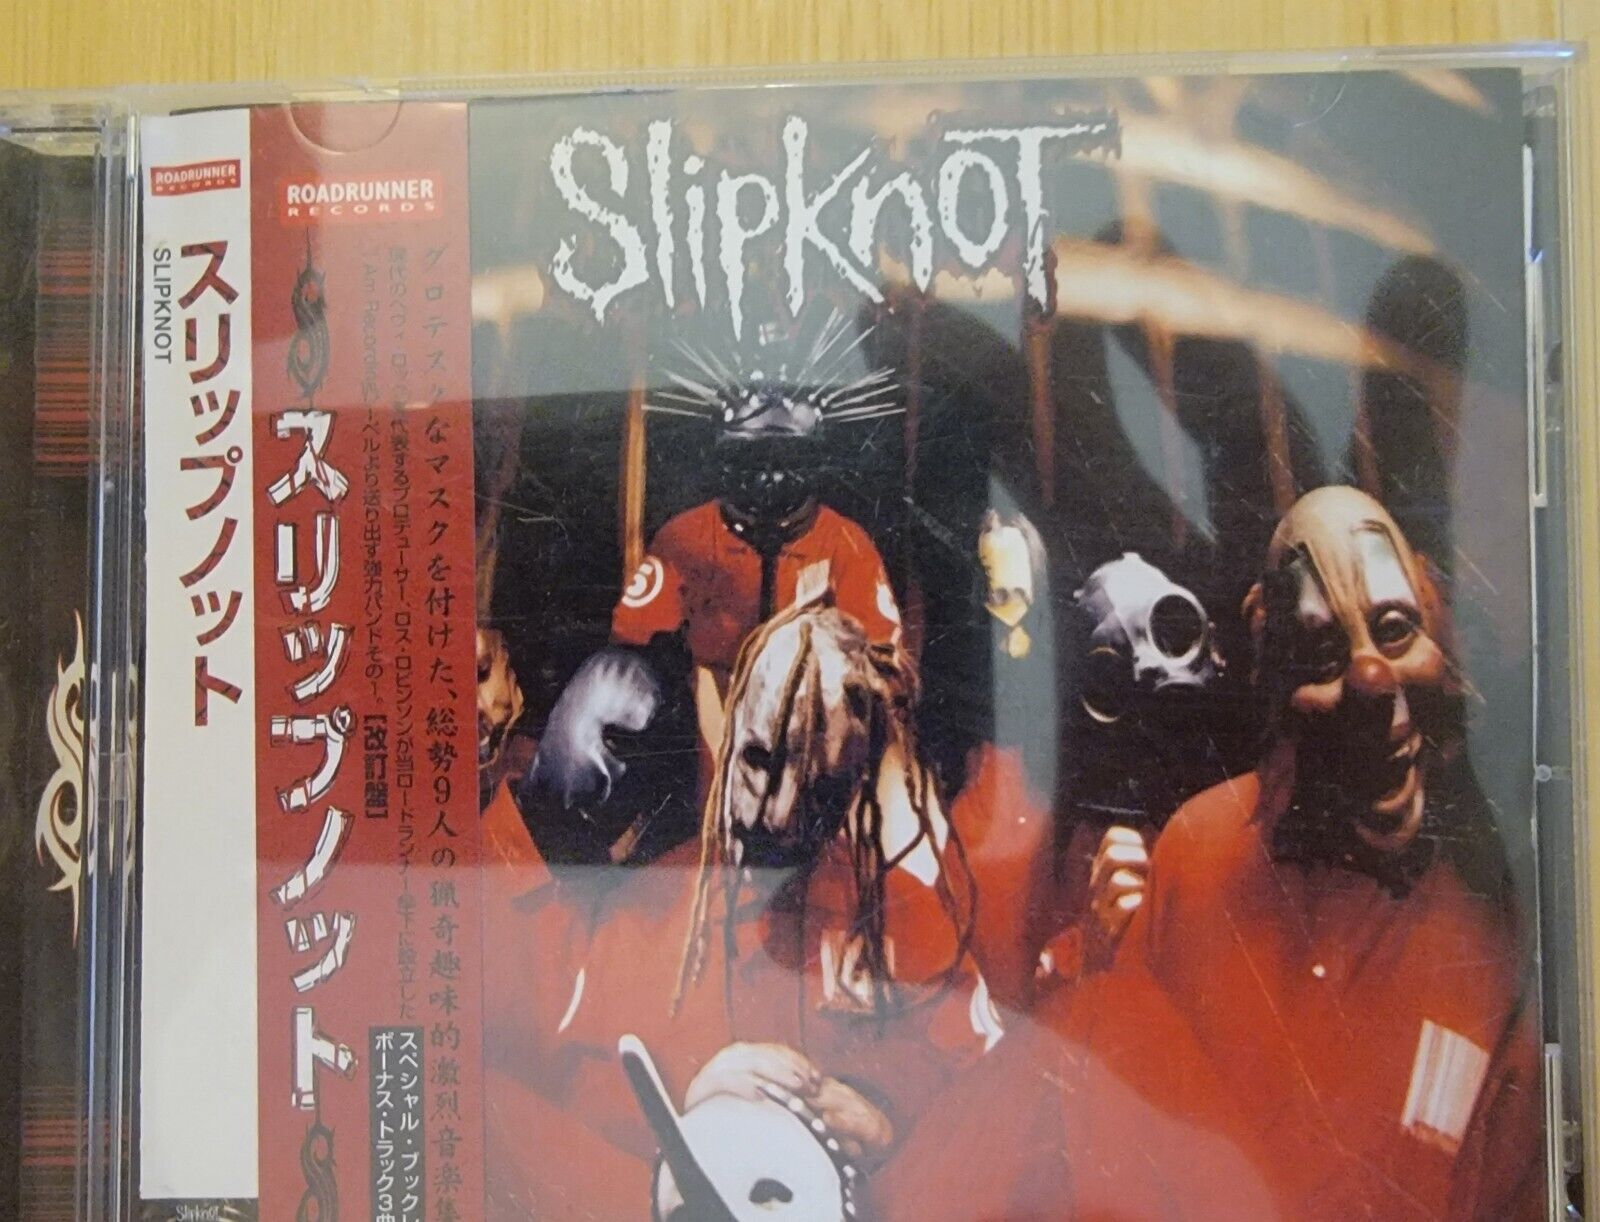 Slipknot CD RRCY-11118 Roadrunner 2000 3 Bonus Tracks OBI FLAW Japan -US Seller